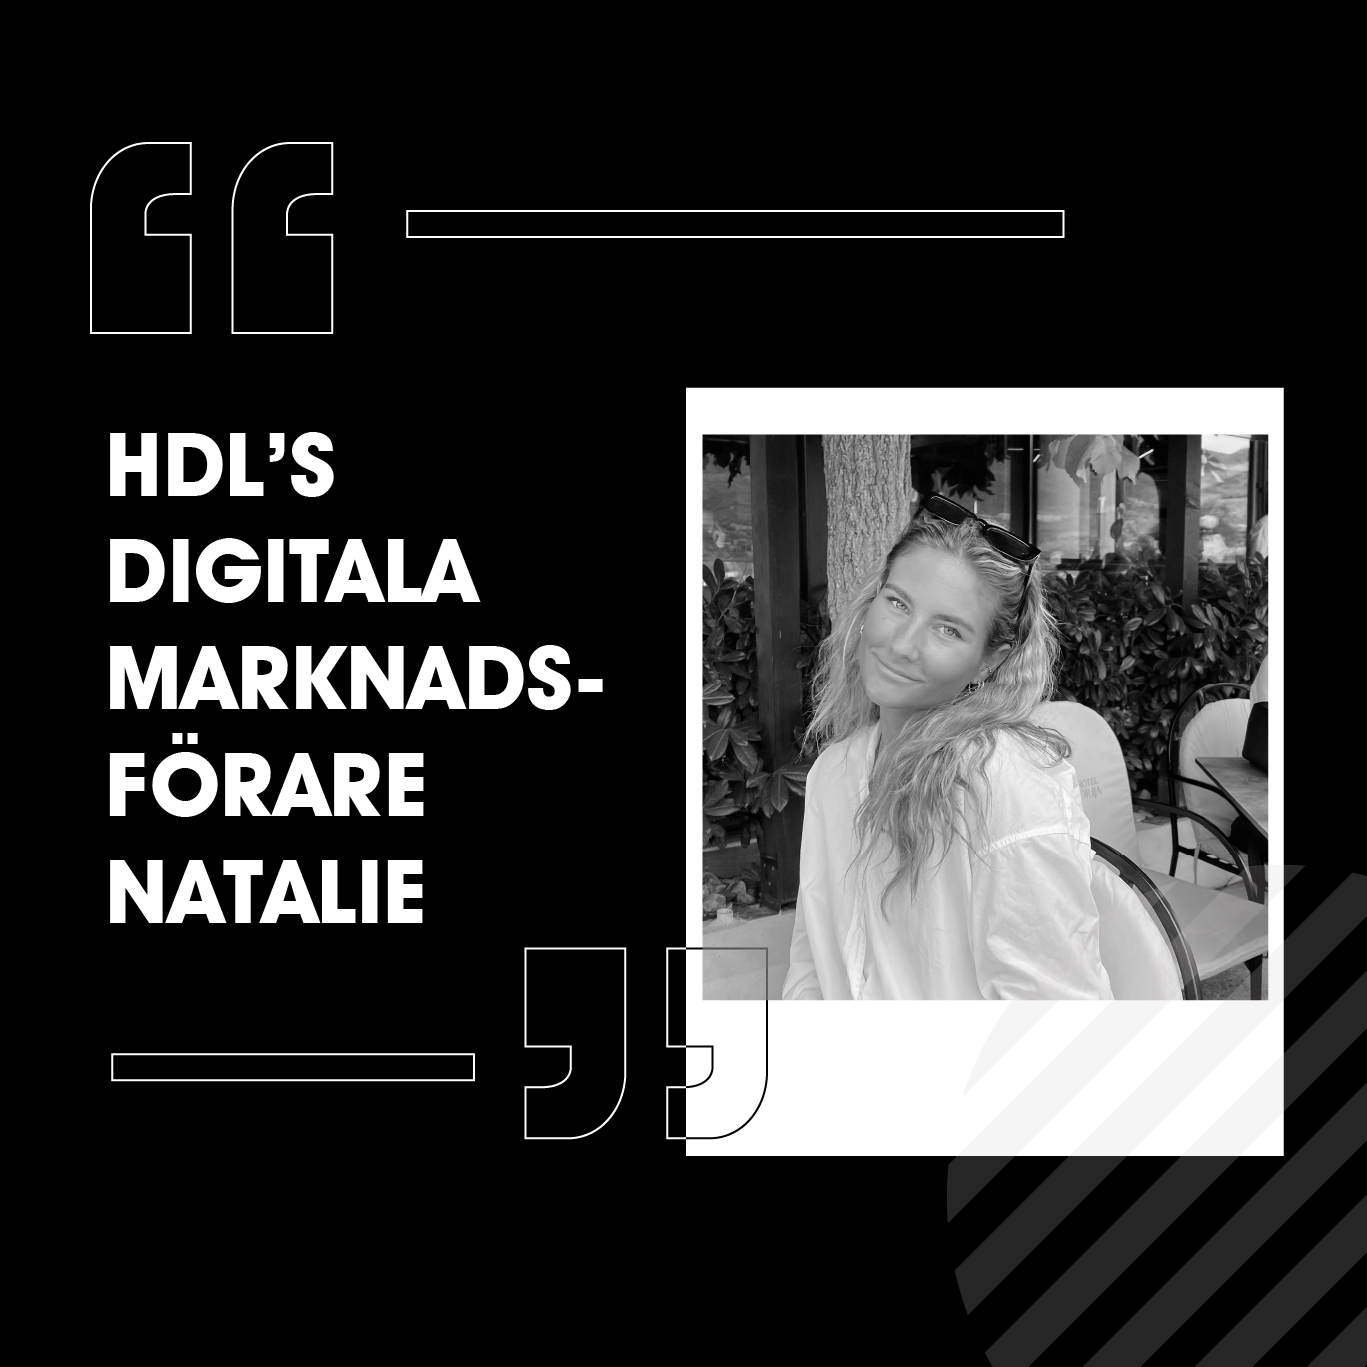 HDL’s Digitala Marknadsförare Natalie